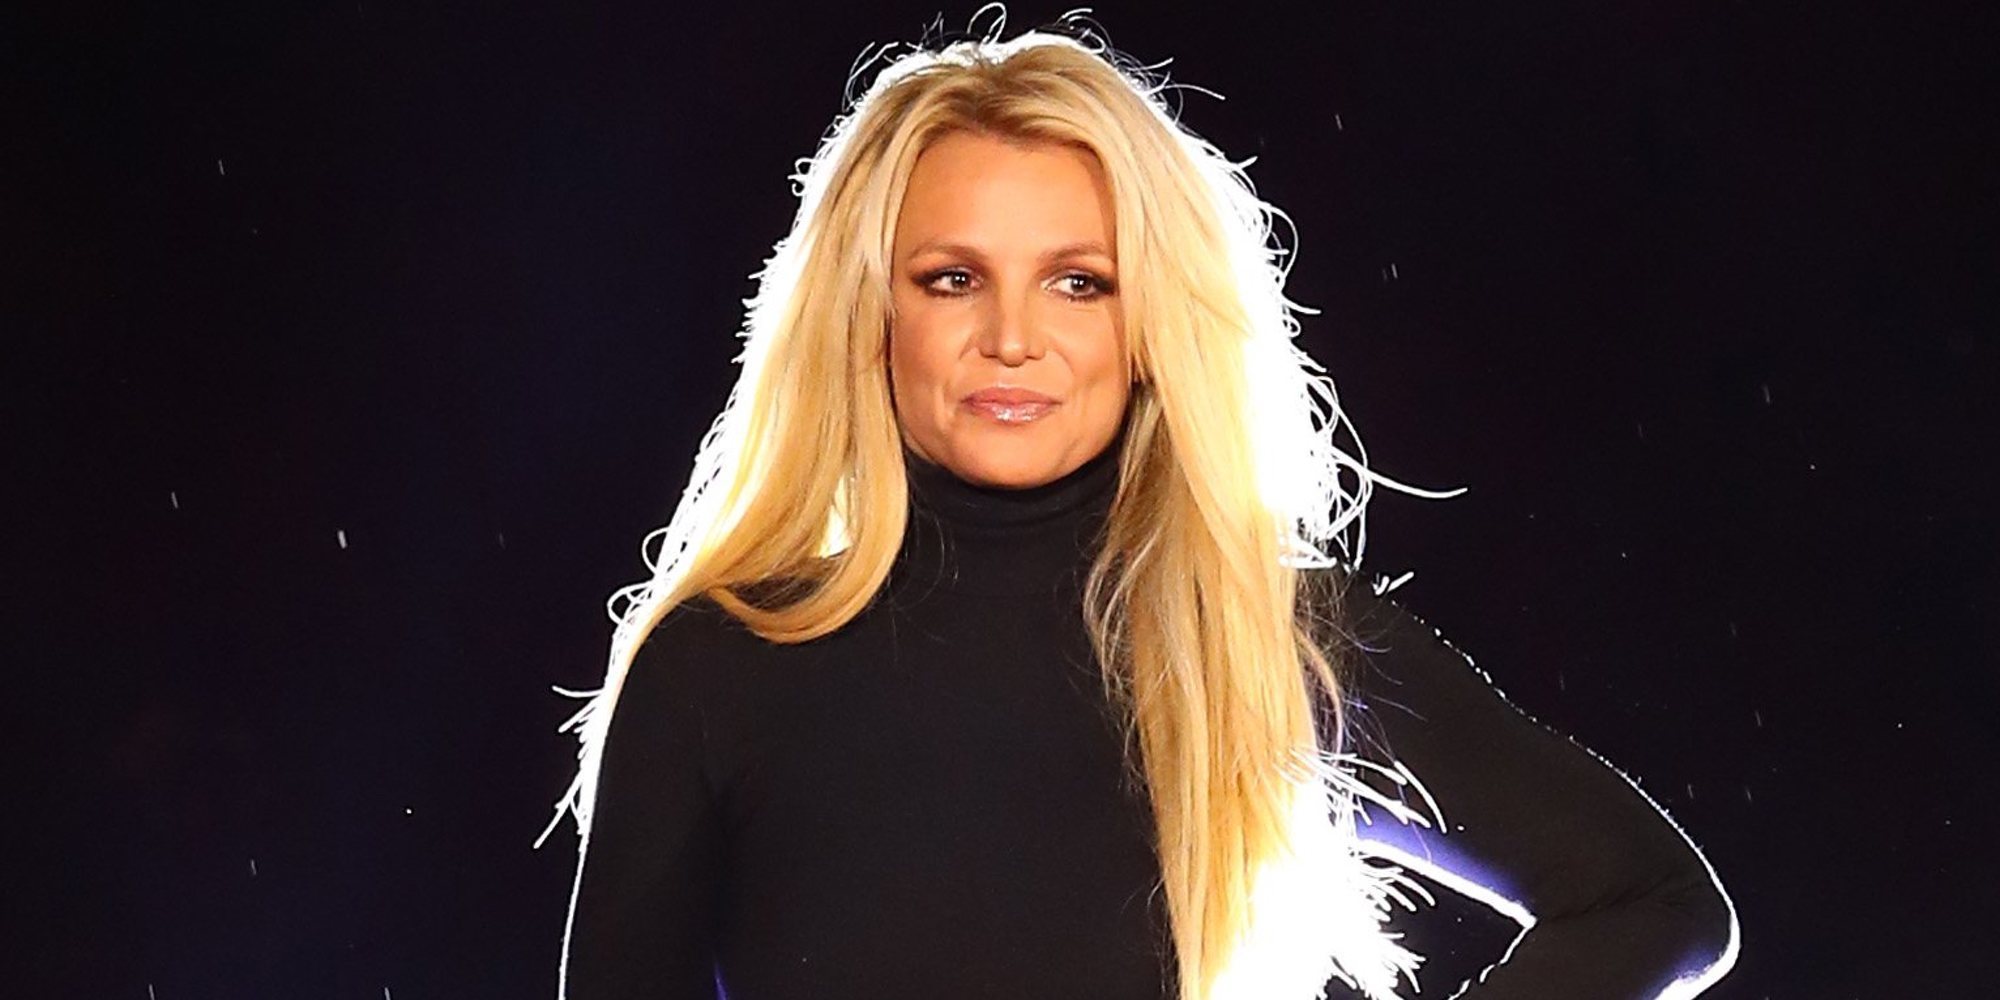 El mensaje tranquilizador de Britney Spears tras su paso por un centro psiquiátrico: "Pronto estaré de vuelta"